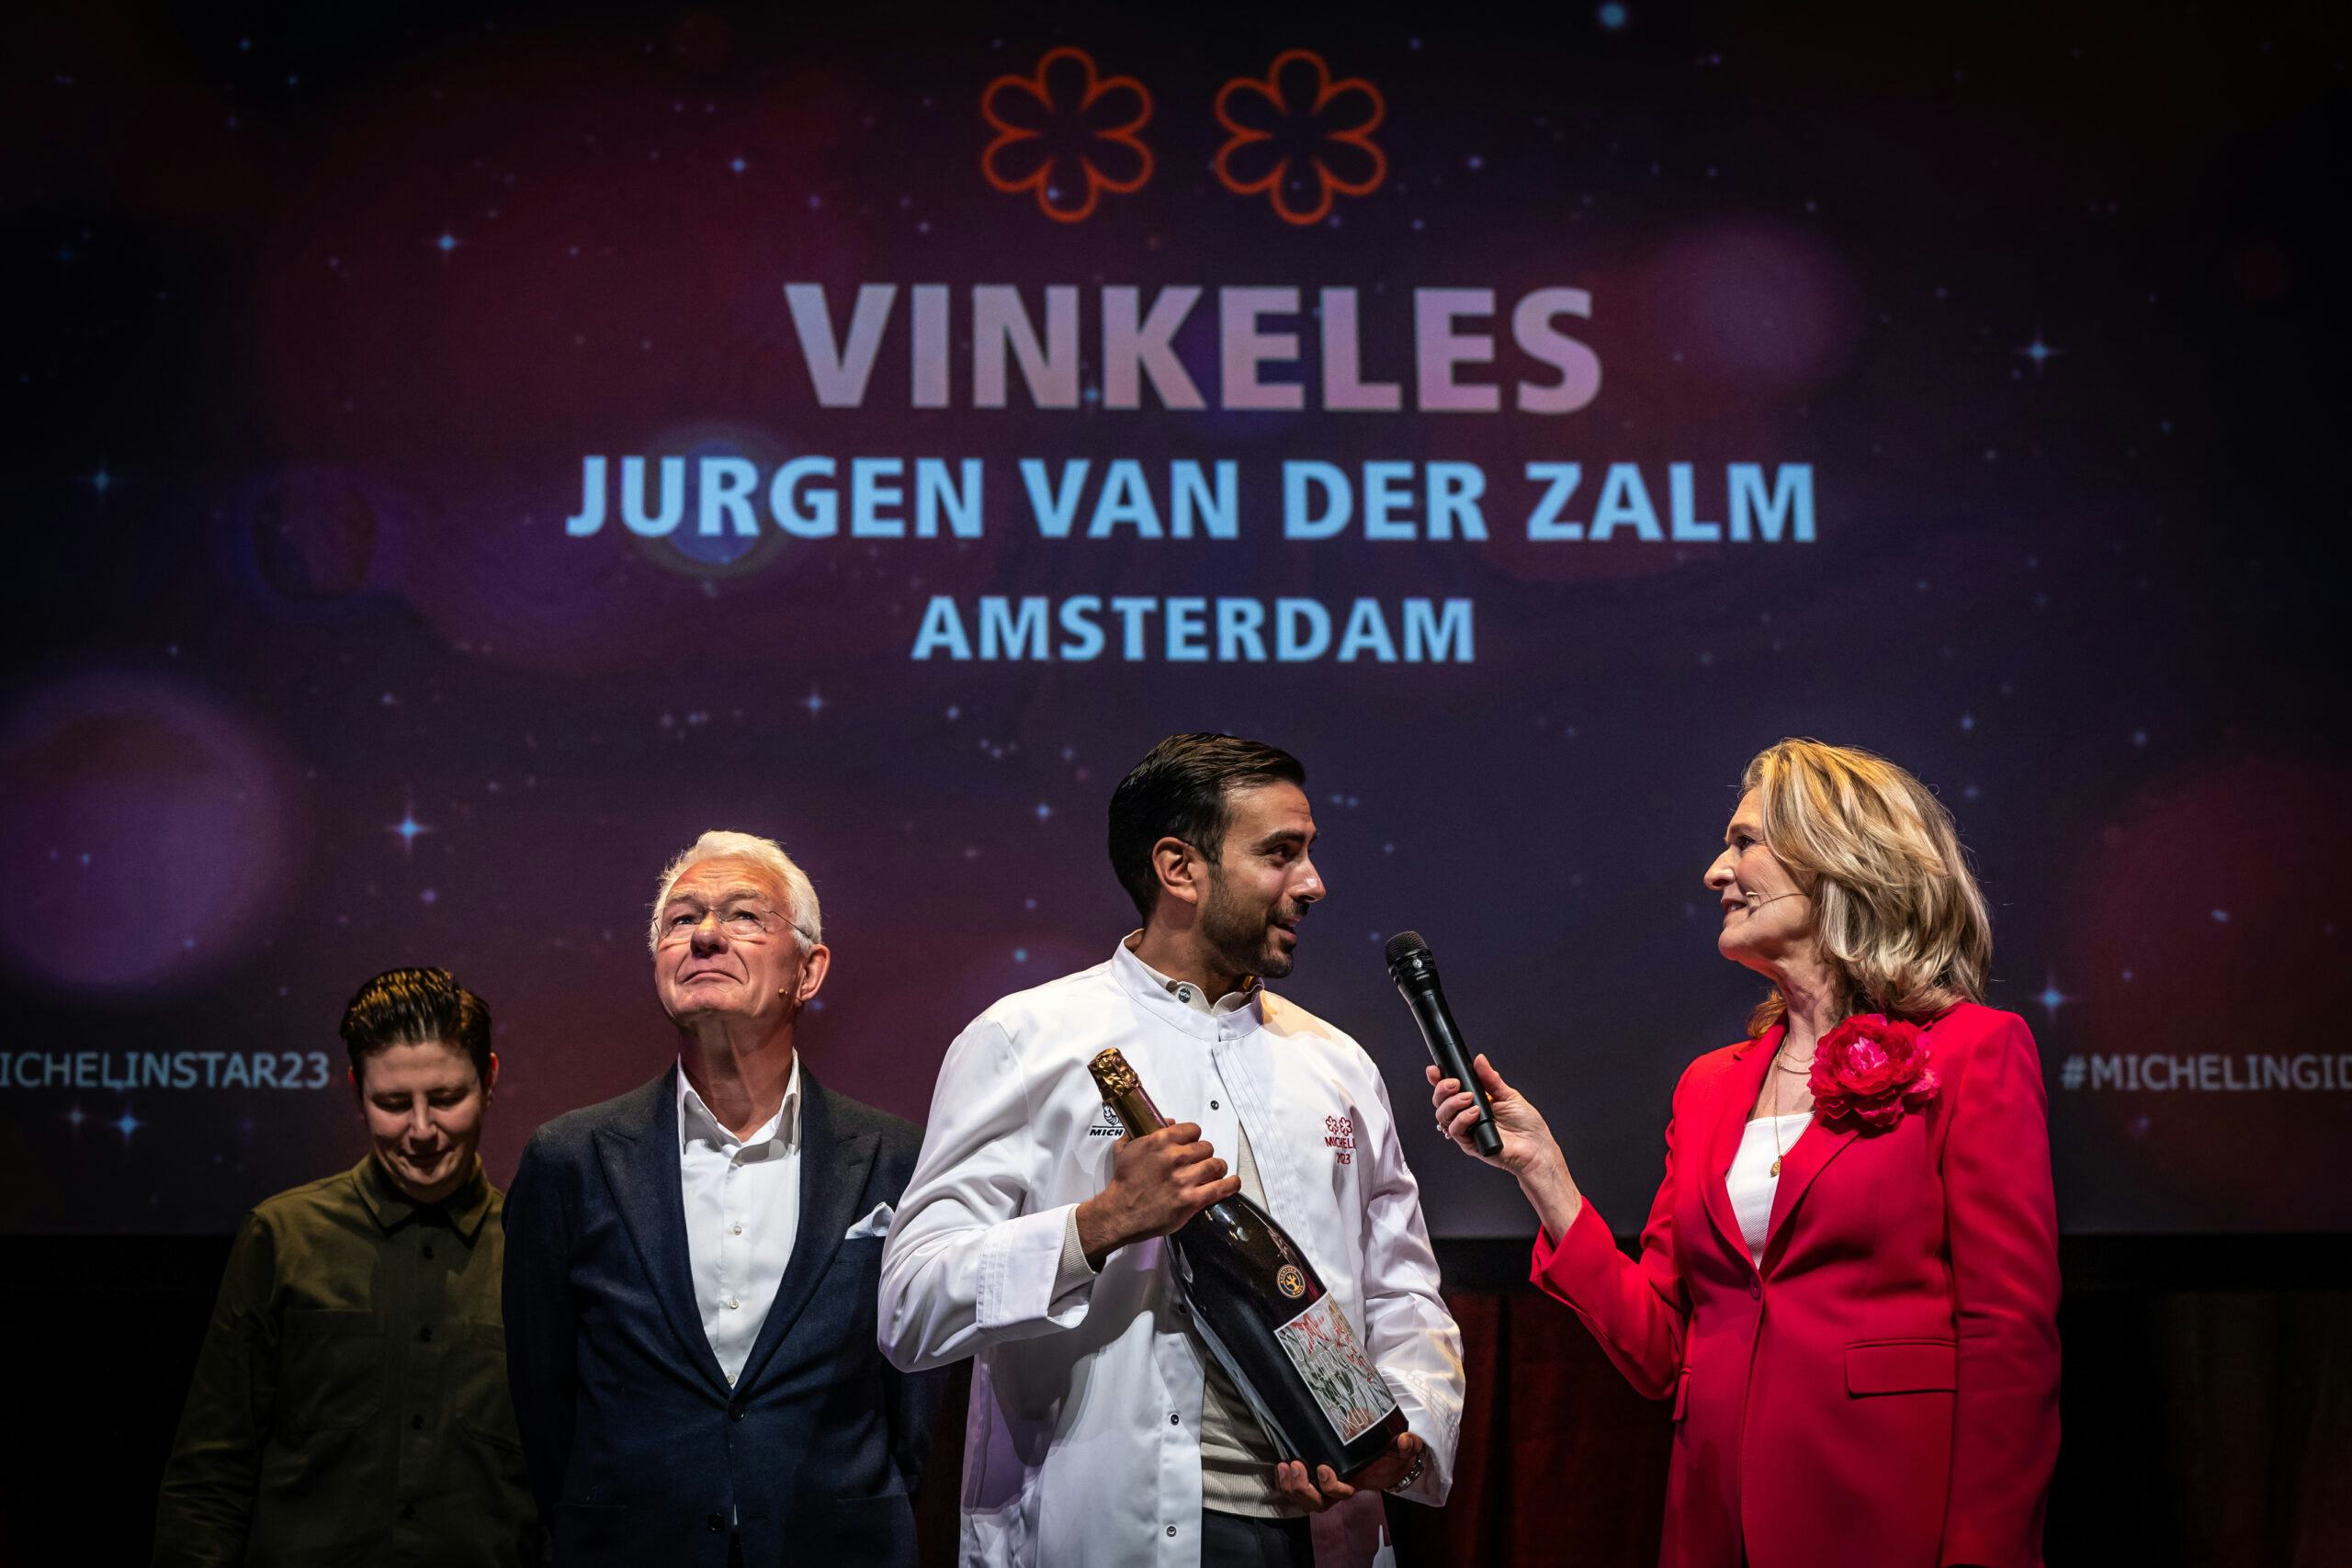 Tweede ster Jurgen van der Zalm: 'Kwam om die ene ster te behouden'